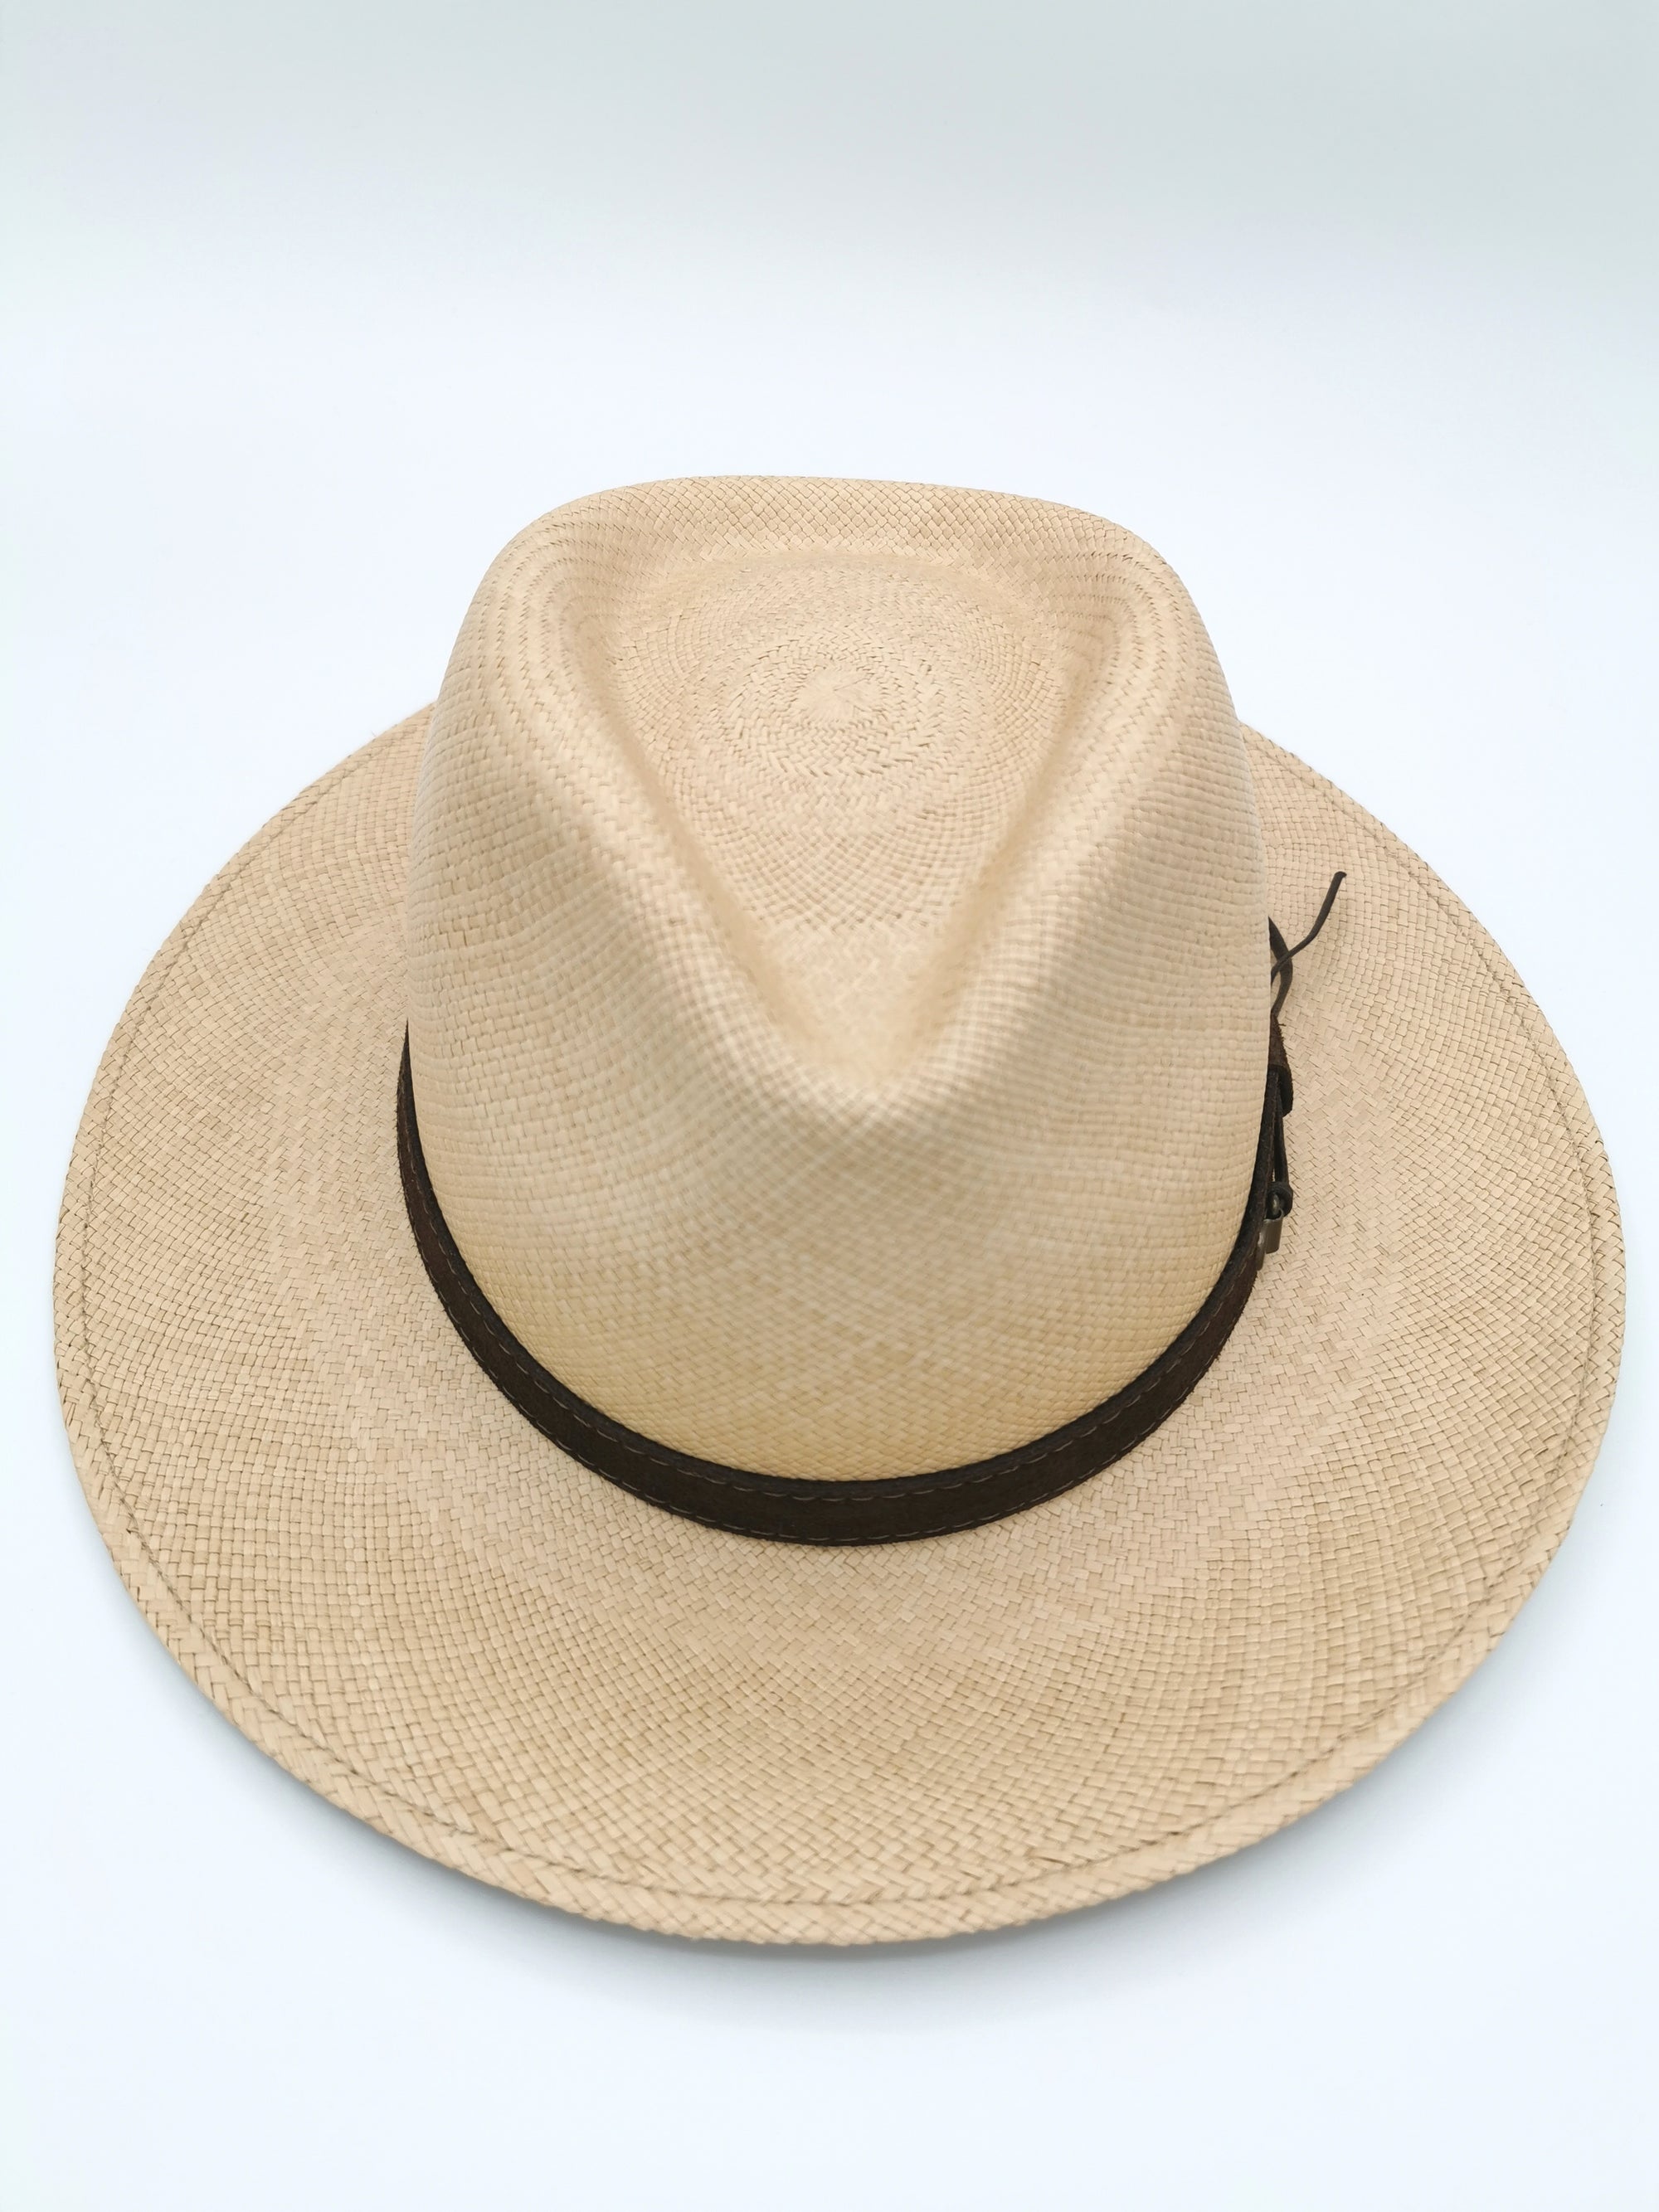 Chapeau Panama coloris sable et bandeau en cuir